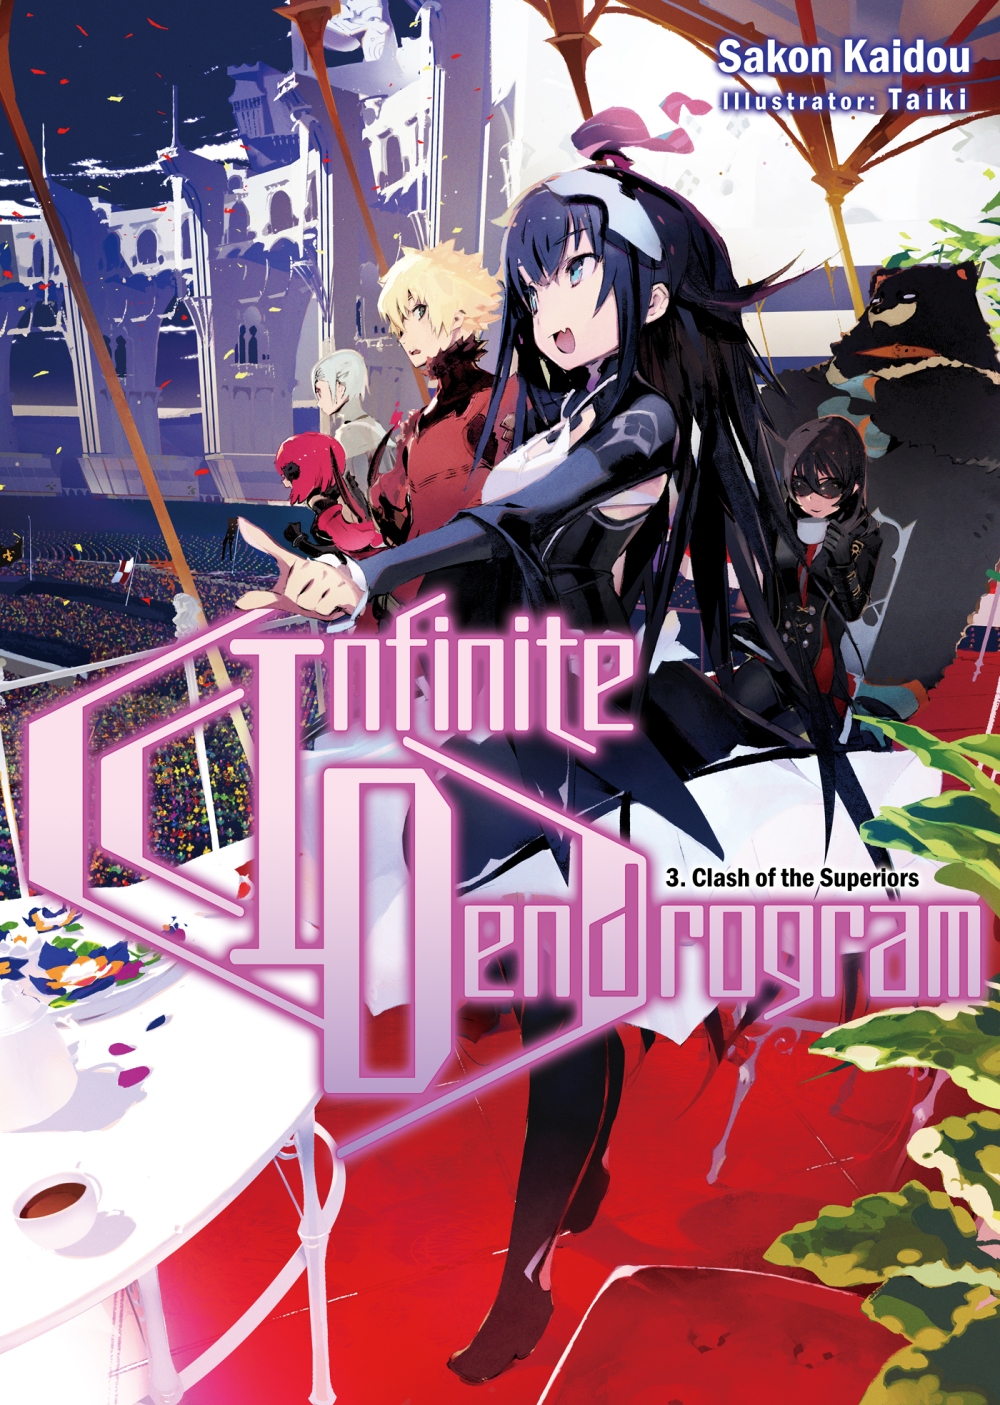 Ilustrasi Infinite Dendrogram Volume 3 Light Novel Division